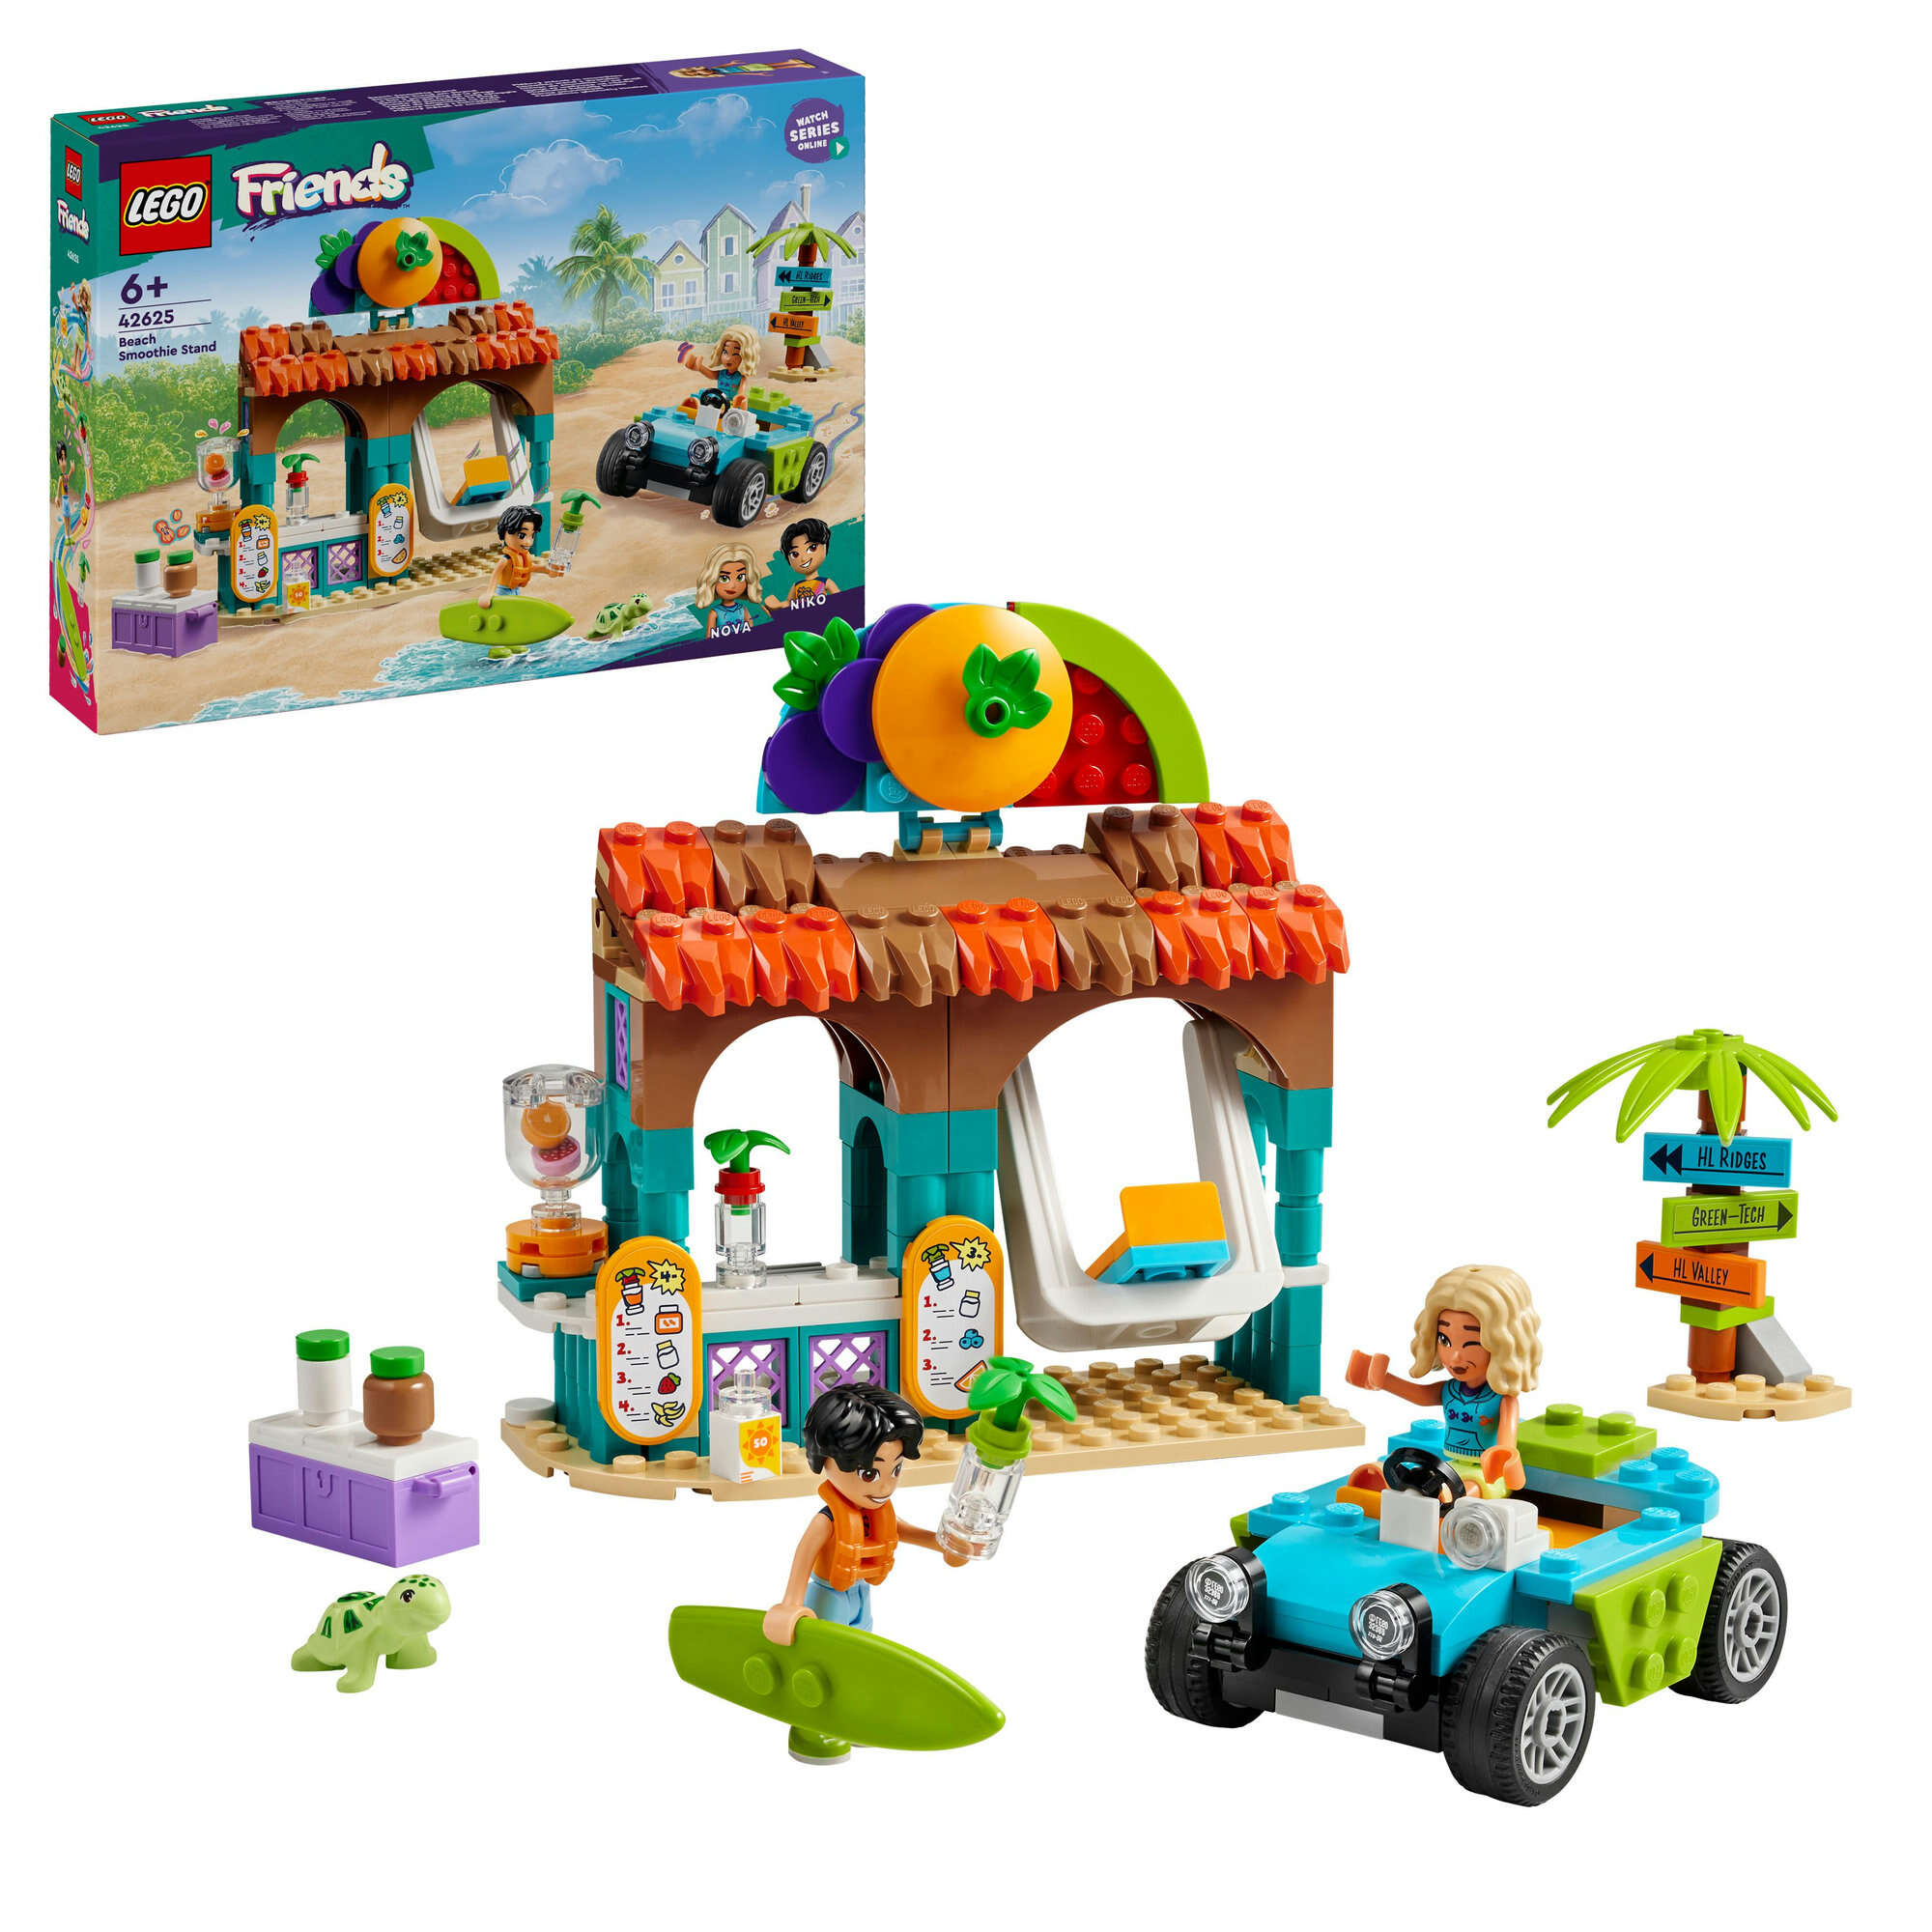 LEGO 42625 Friends Smoothie-Stand am Strand, 2 Spielfiguren, Schildkröte